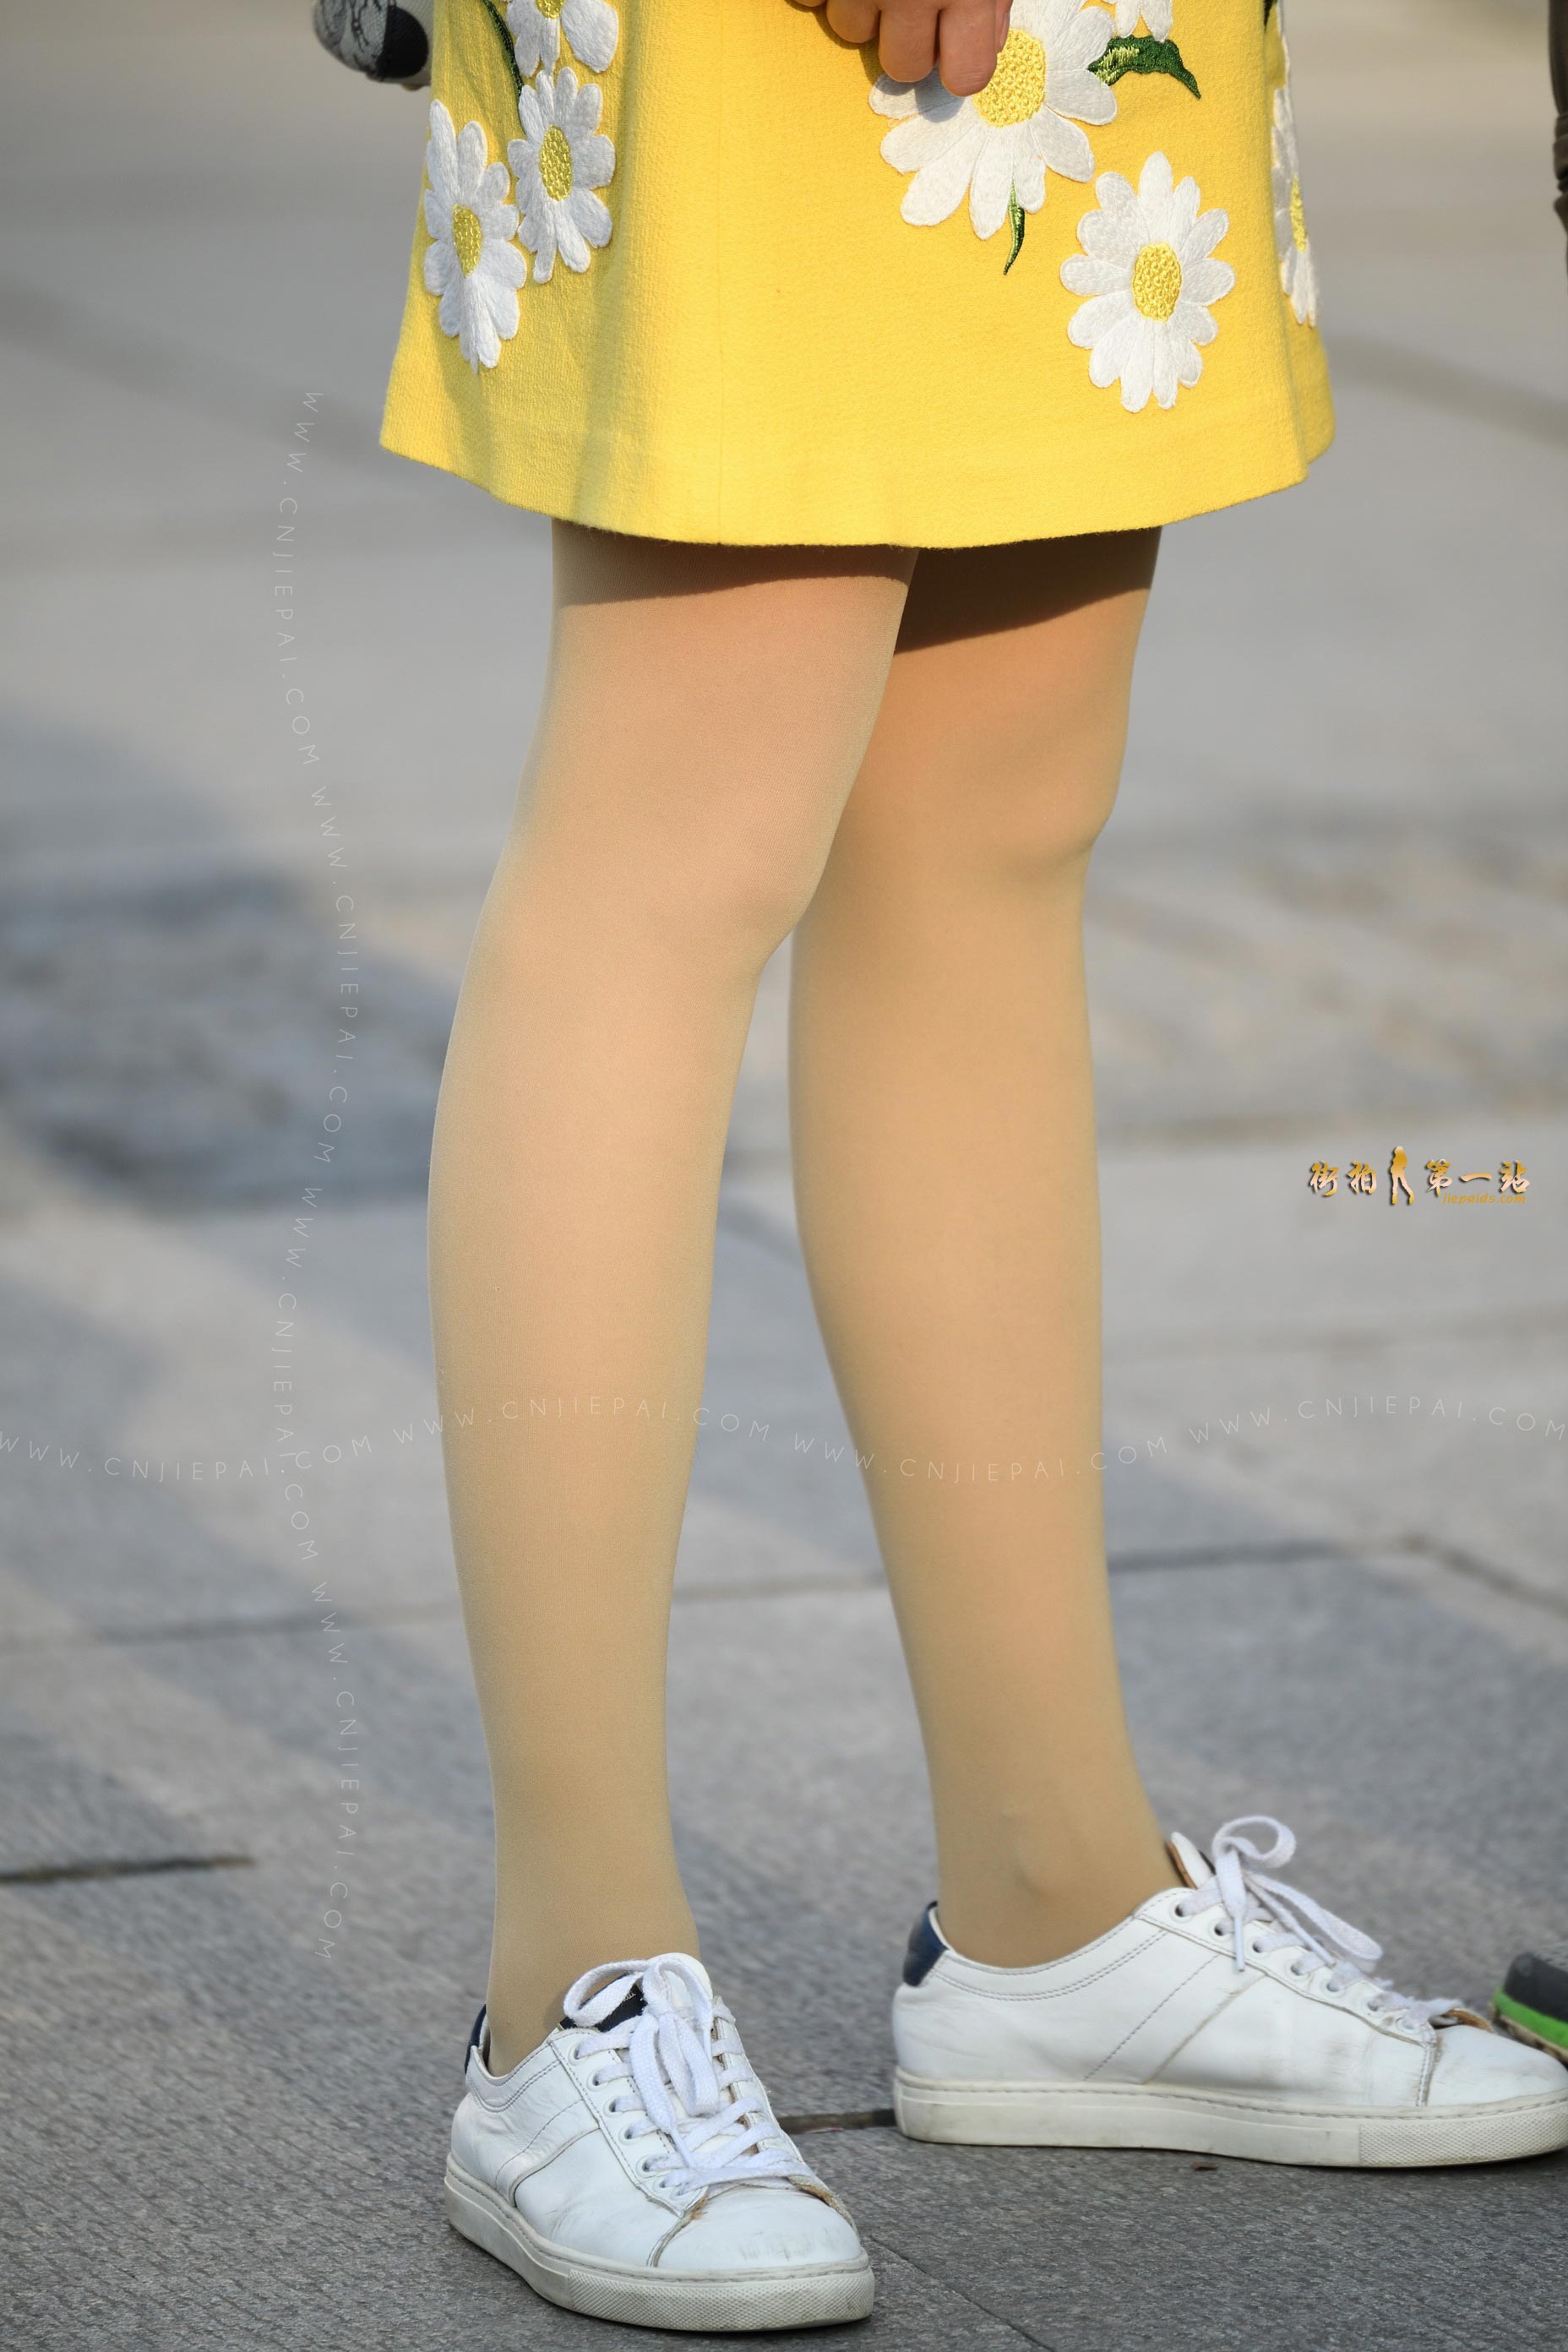 性感黄裙长发美女蹲着拍照，高清丝袜玉腿特写 图2